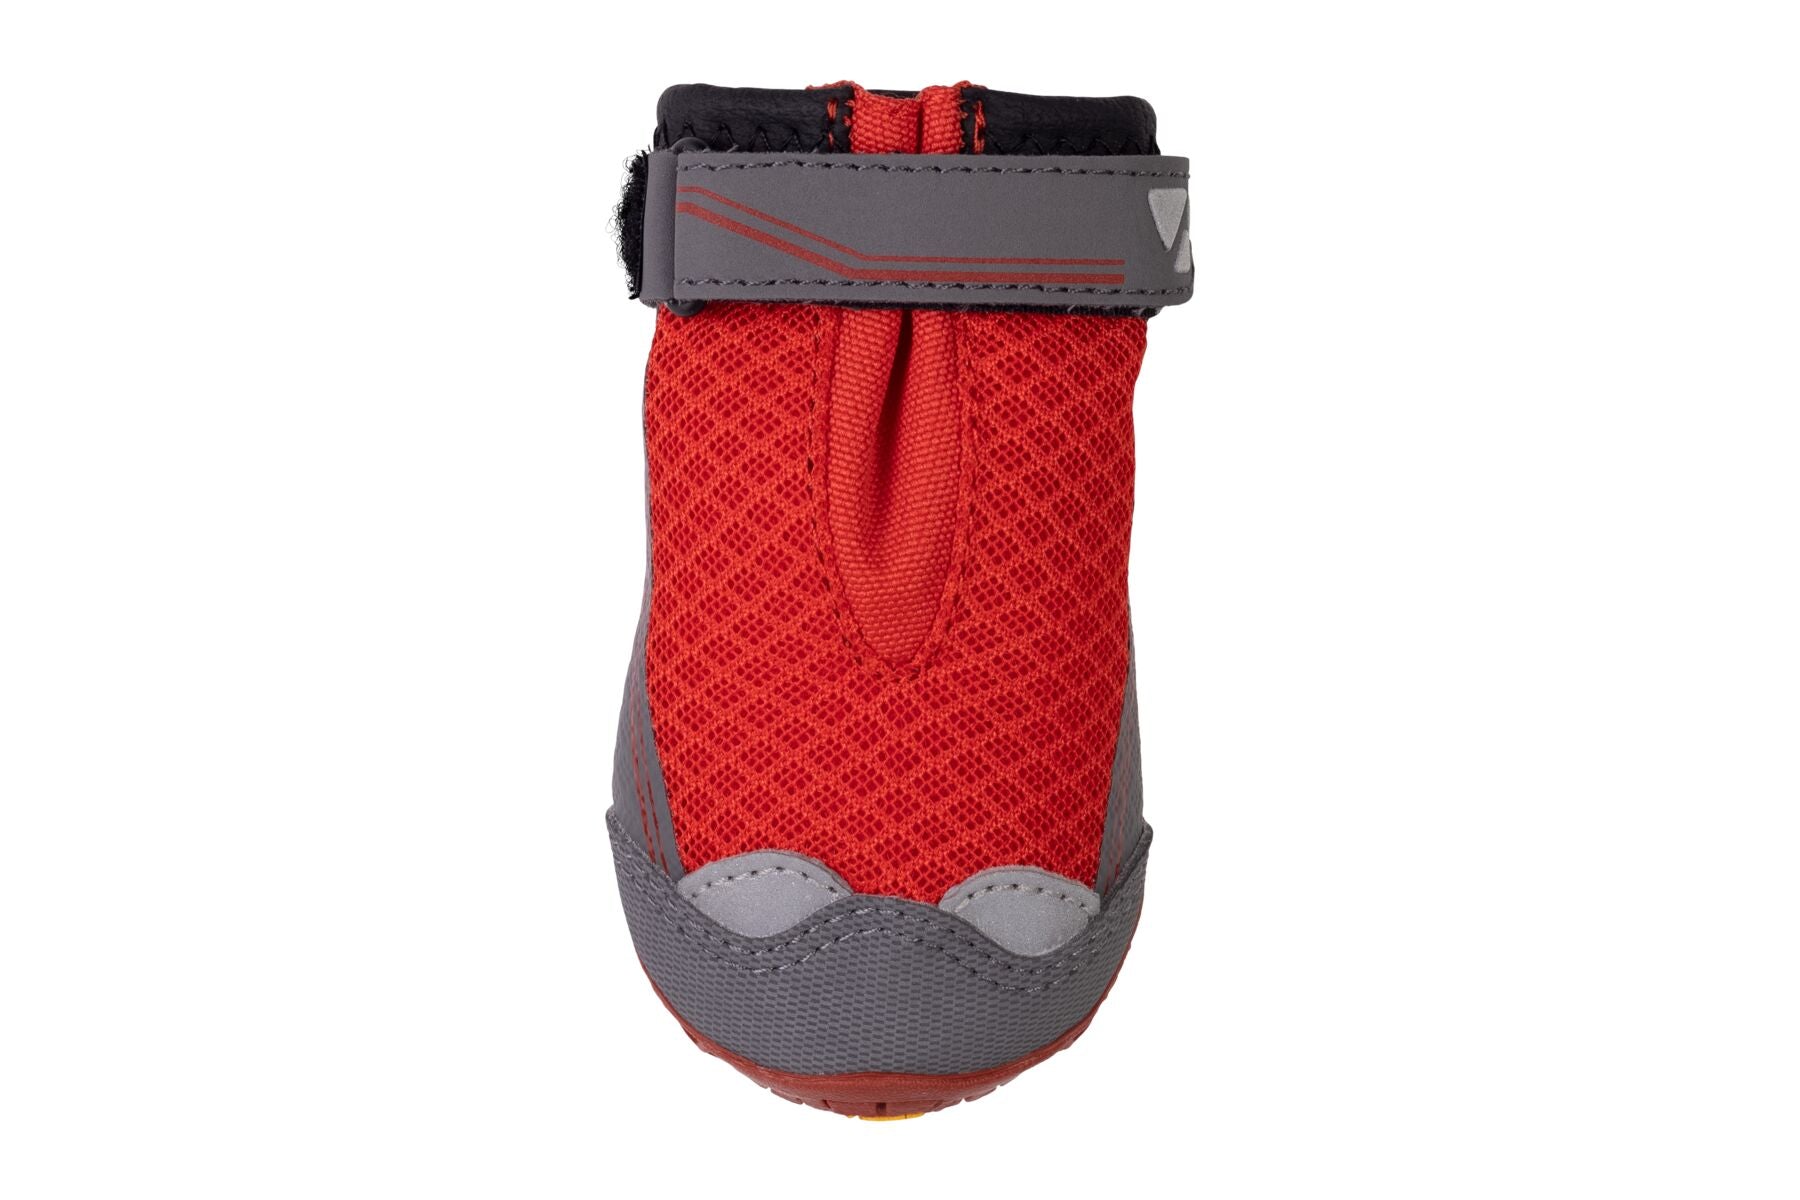 Botas para Perros Grip Trex™ de Ruffwear en Rojo (Red Sumac)(PAR DE BOTAS / 2 BOTAS)